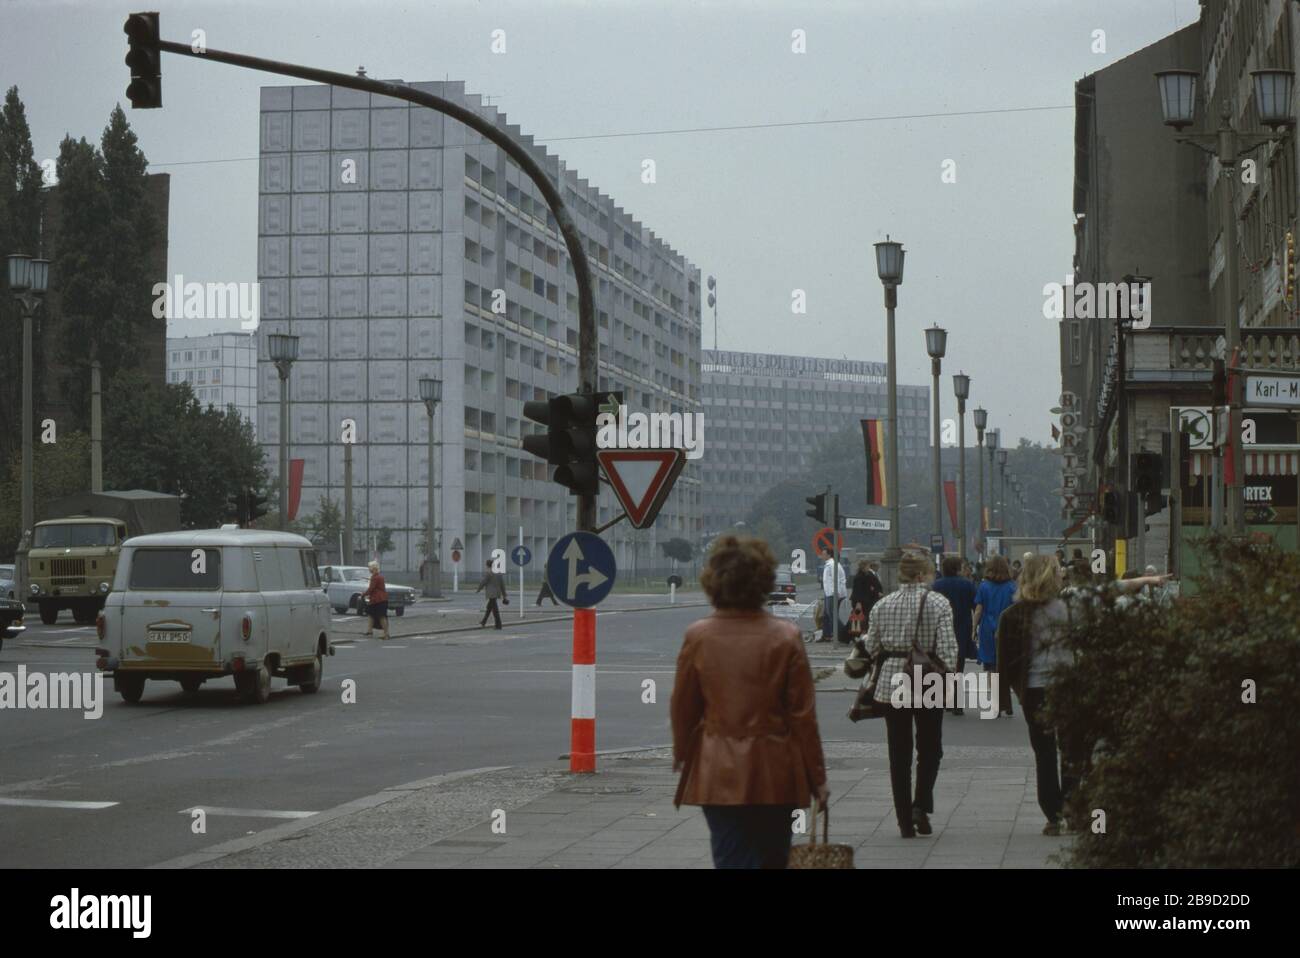 Les piétons traversent l'intersection de la Straße der Pariser Kommune / Karl-Marx-Allee, qui est décorée avec des drapeaux rouges (soviétiques) - le bâtiment d'édition de la Nouvelle Allemagne est visible en arrière-plan. [traduction automatique] Banque D'Images